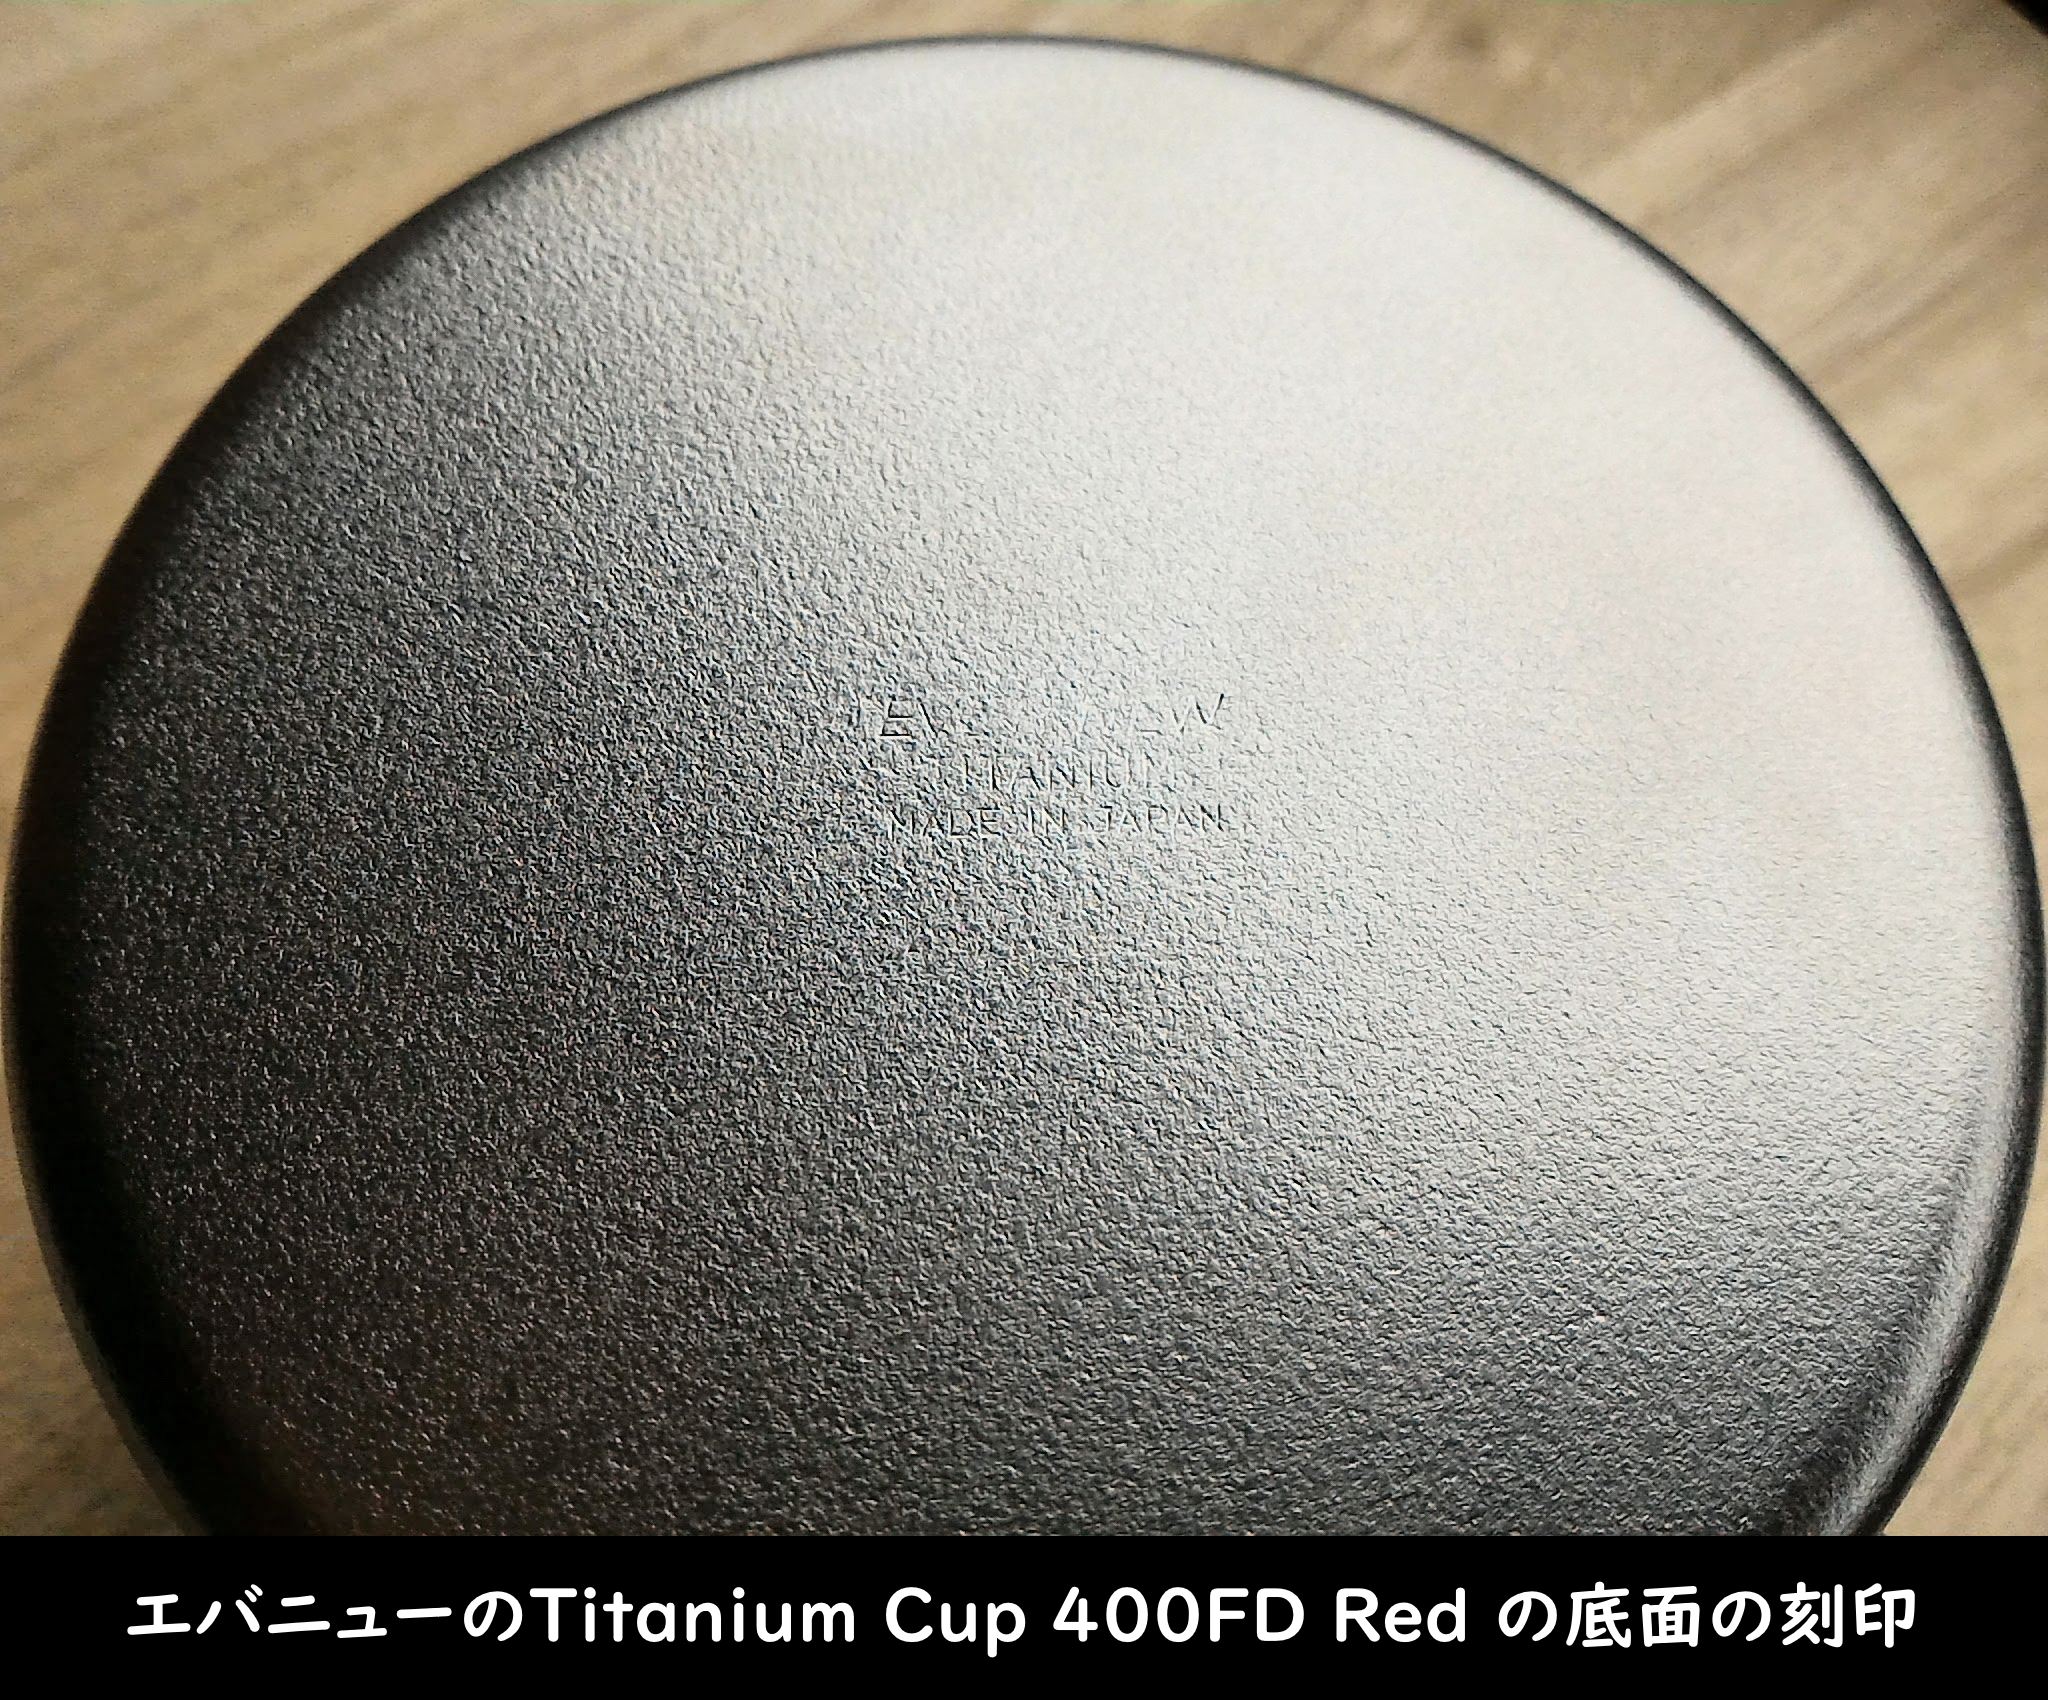 エバニューの「Titanium Cup 400FD Red」底面の刻印